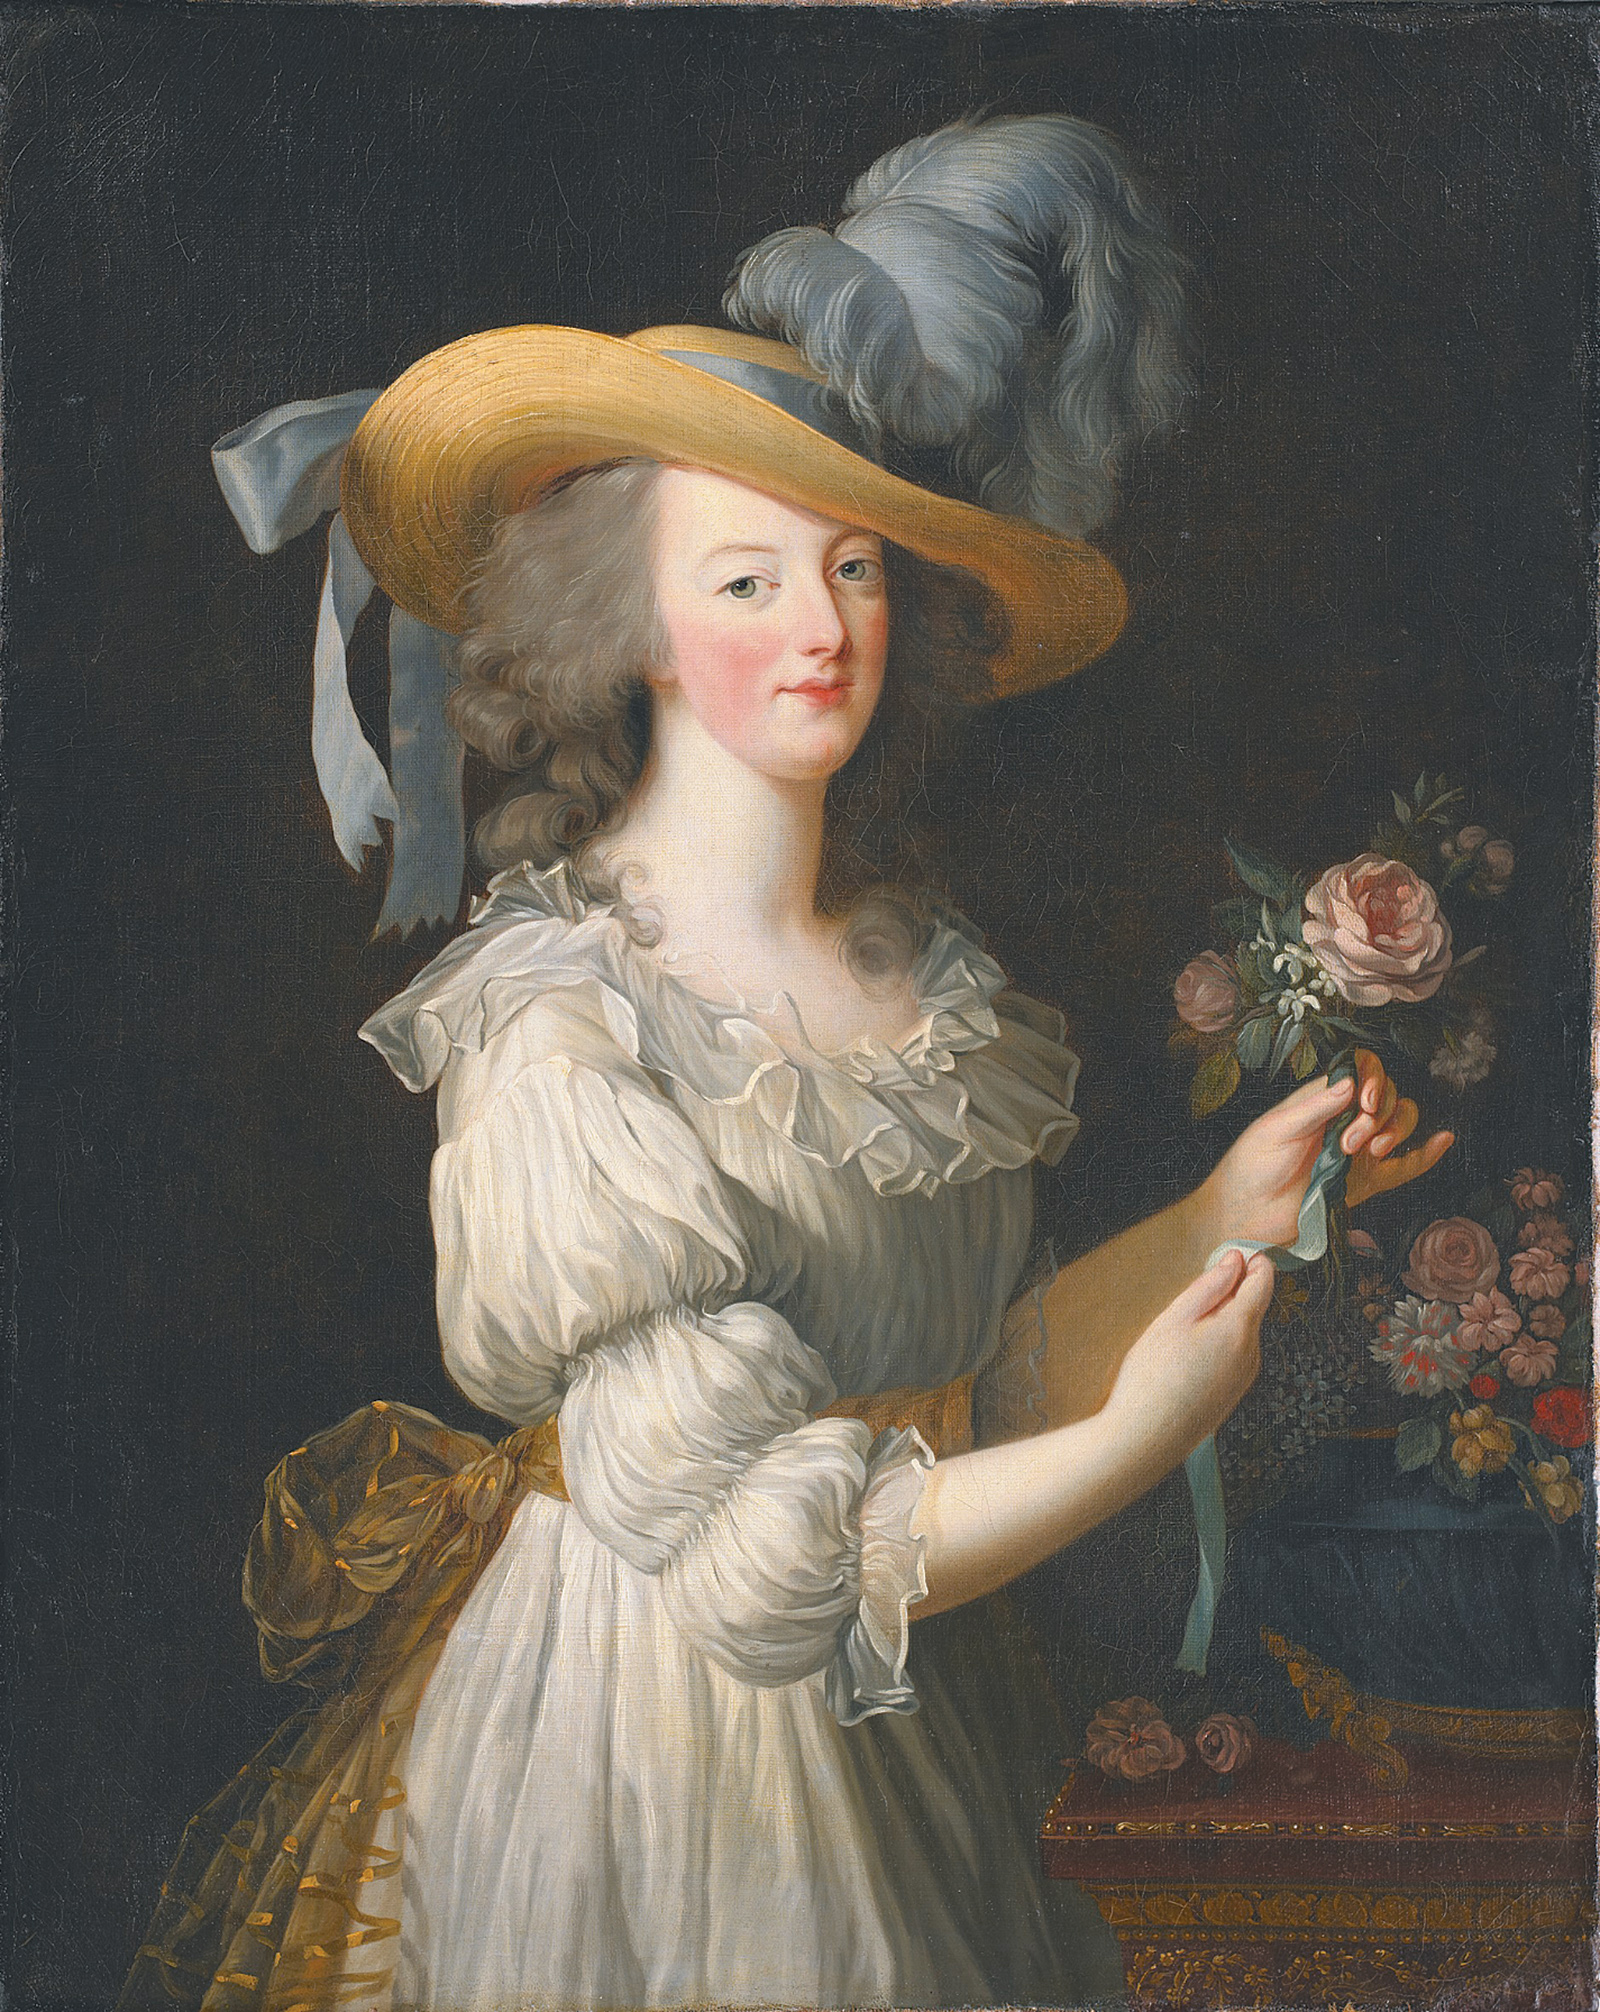 Élisabeth Louise Vigée Le Brun: Marie Antoinette in a Chemise Dress, 1783